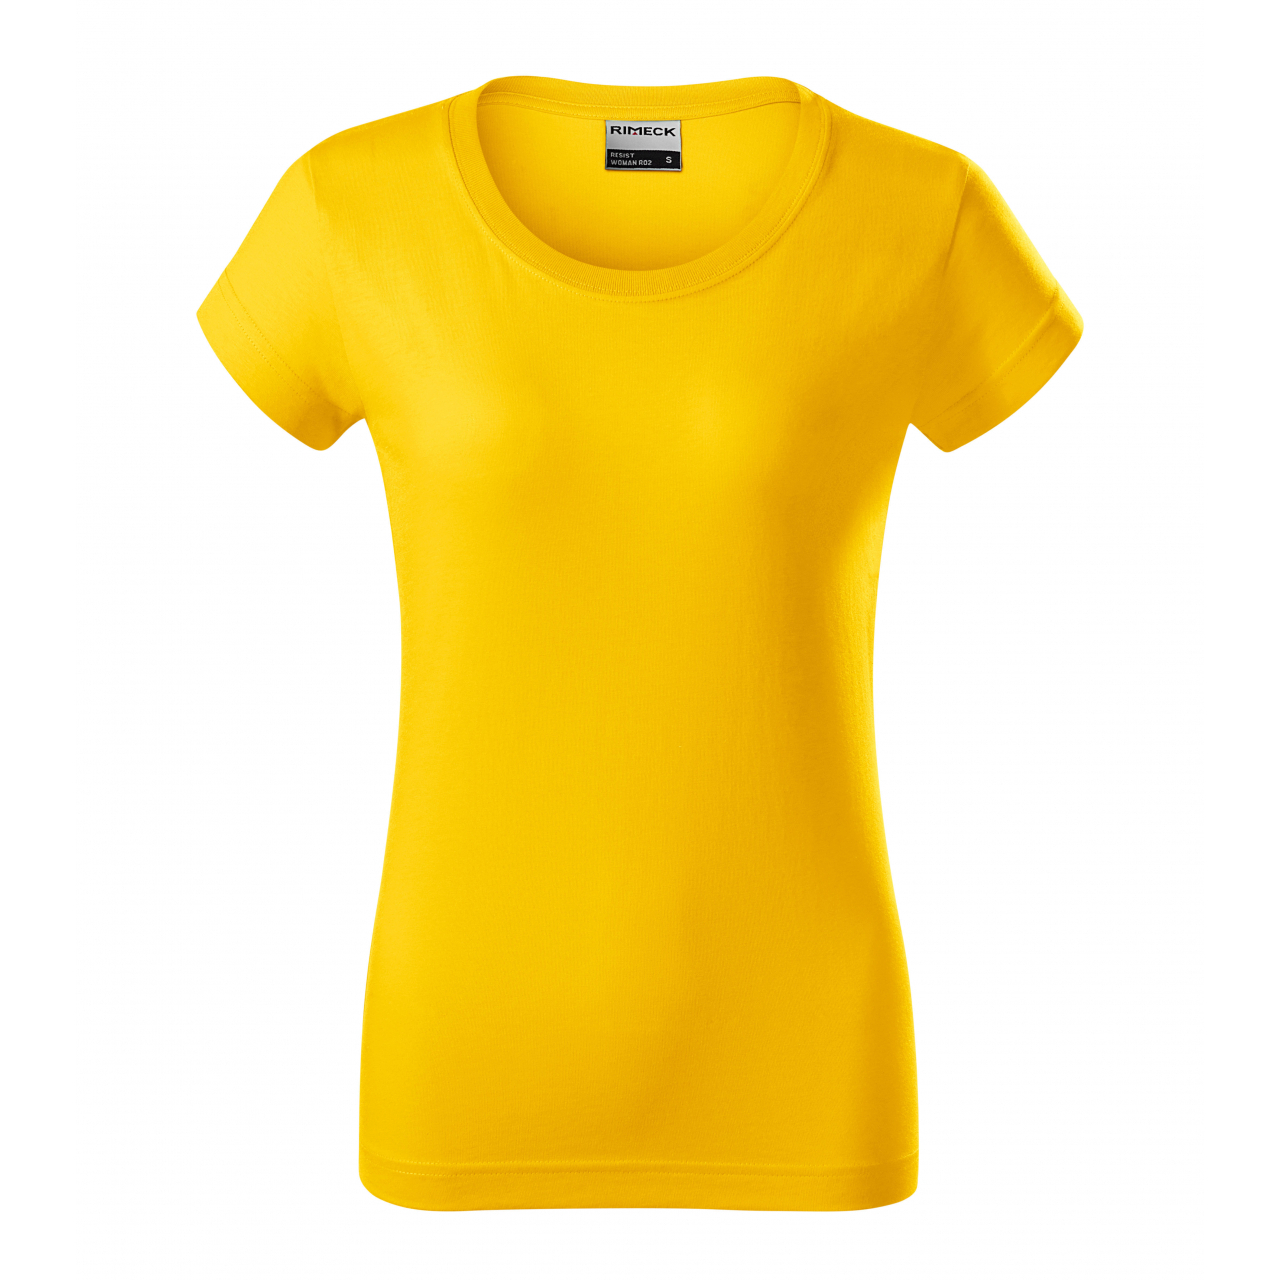 Tričko dámské Rimeck Resist Heavy - žluté, XL